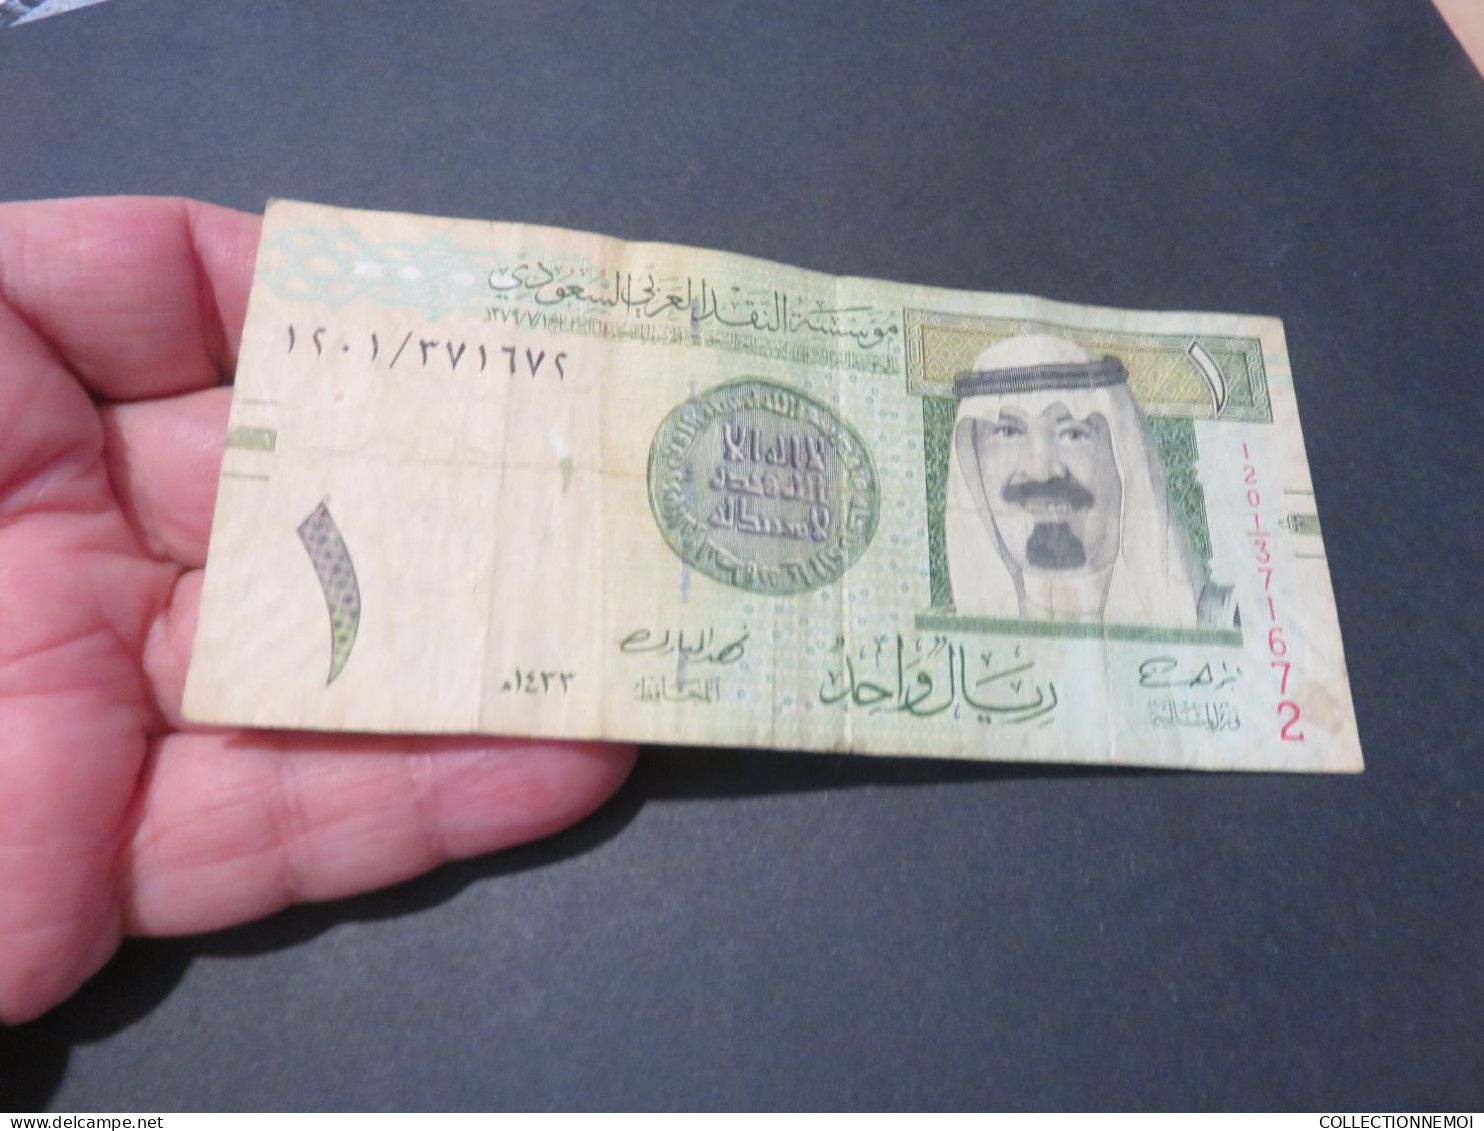 10 billets d arabie saoudite , vendue comme ils sont